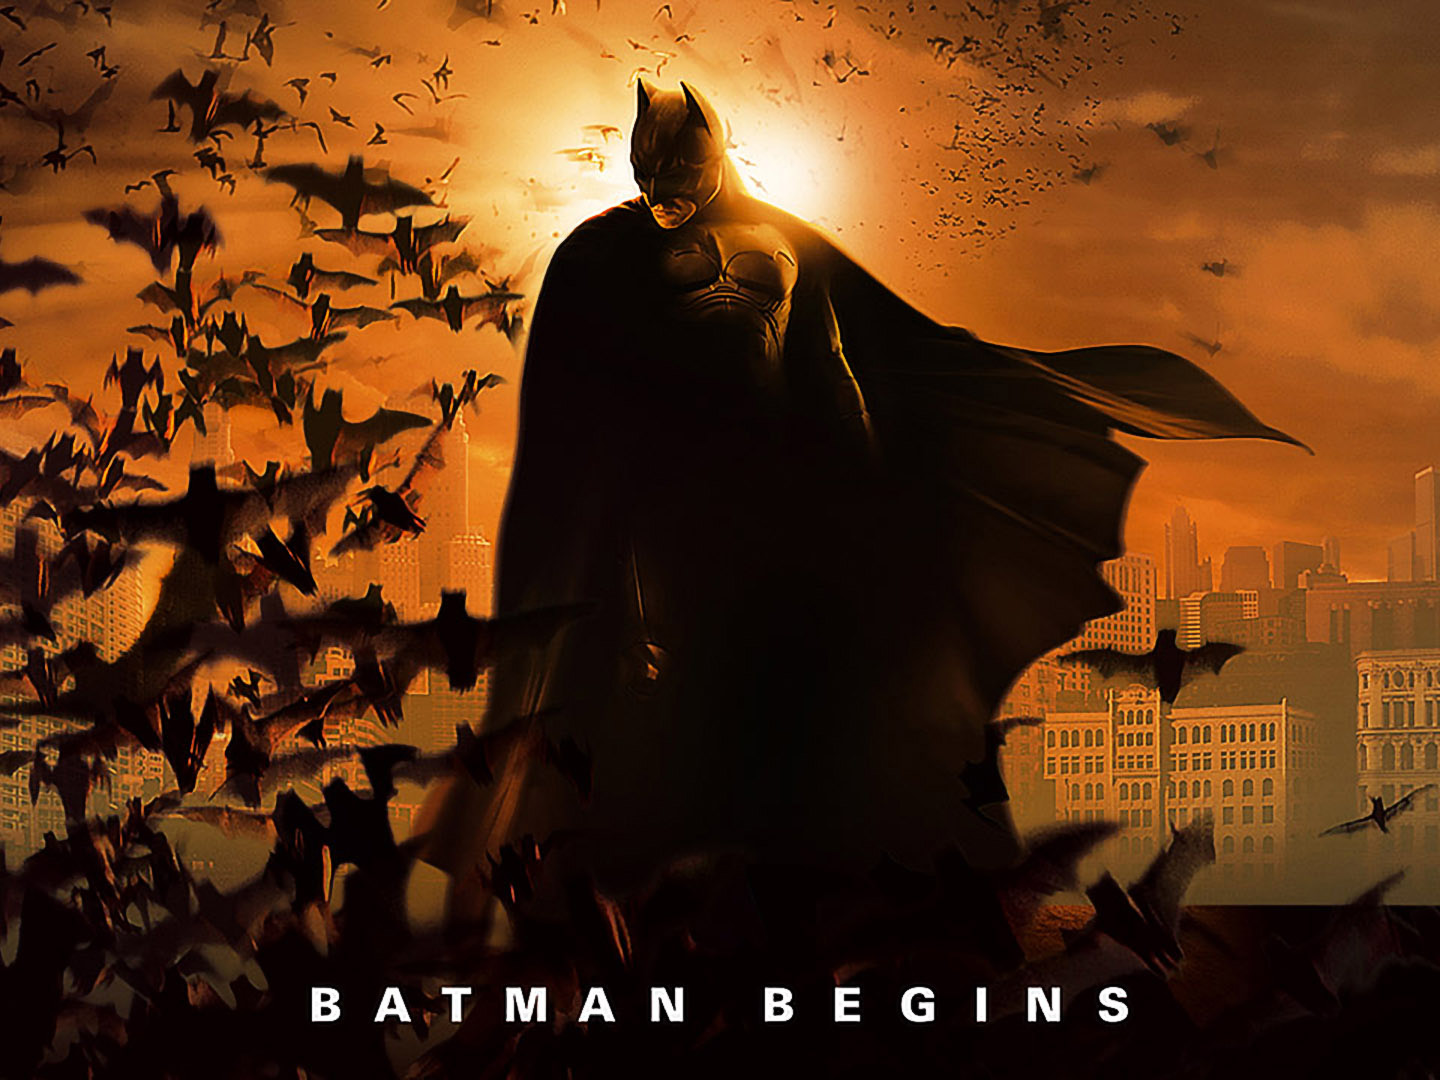 Watch Batman Begins Online with NEON